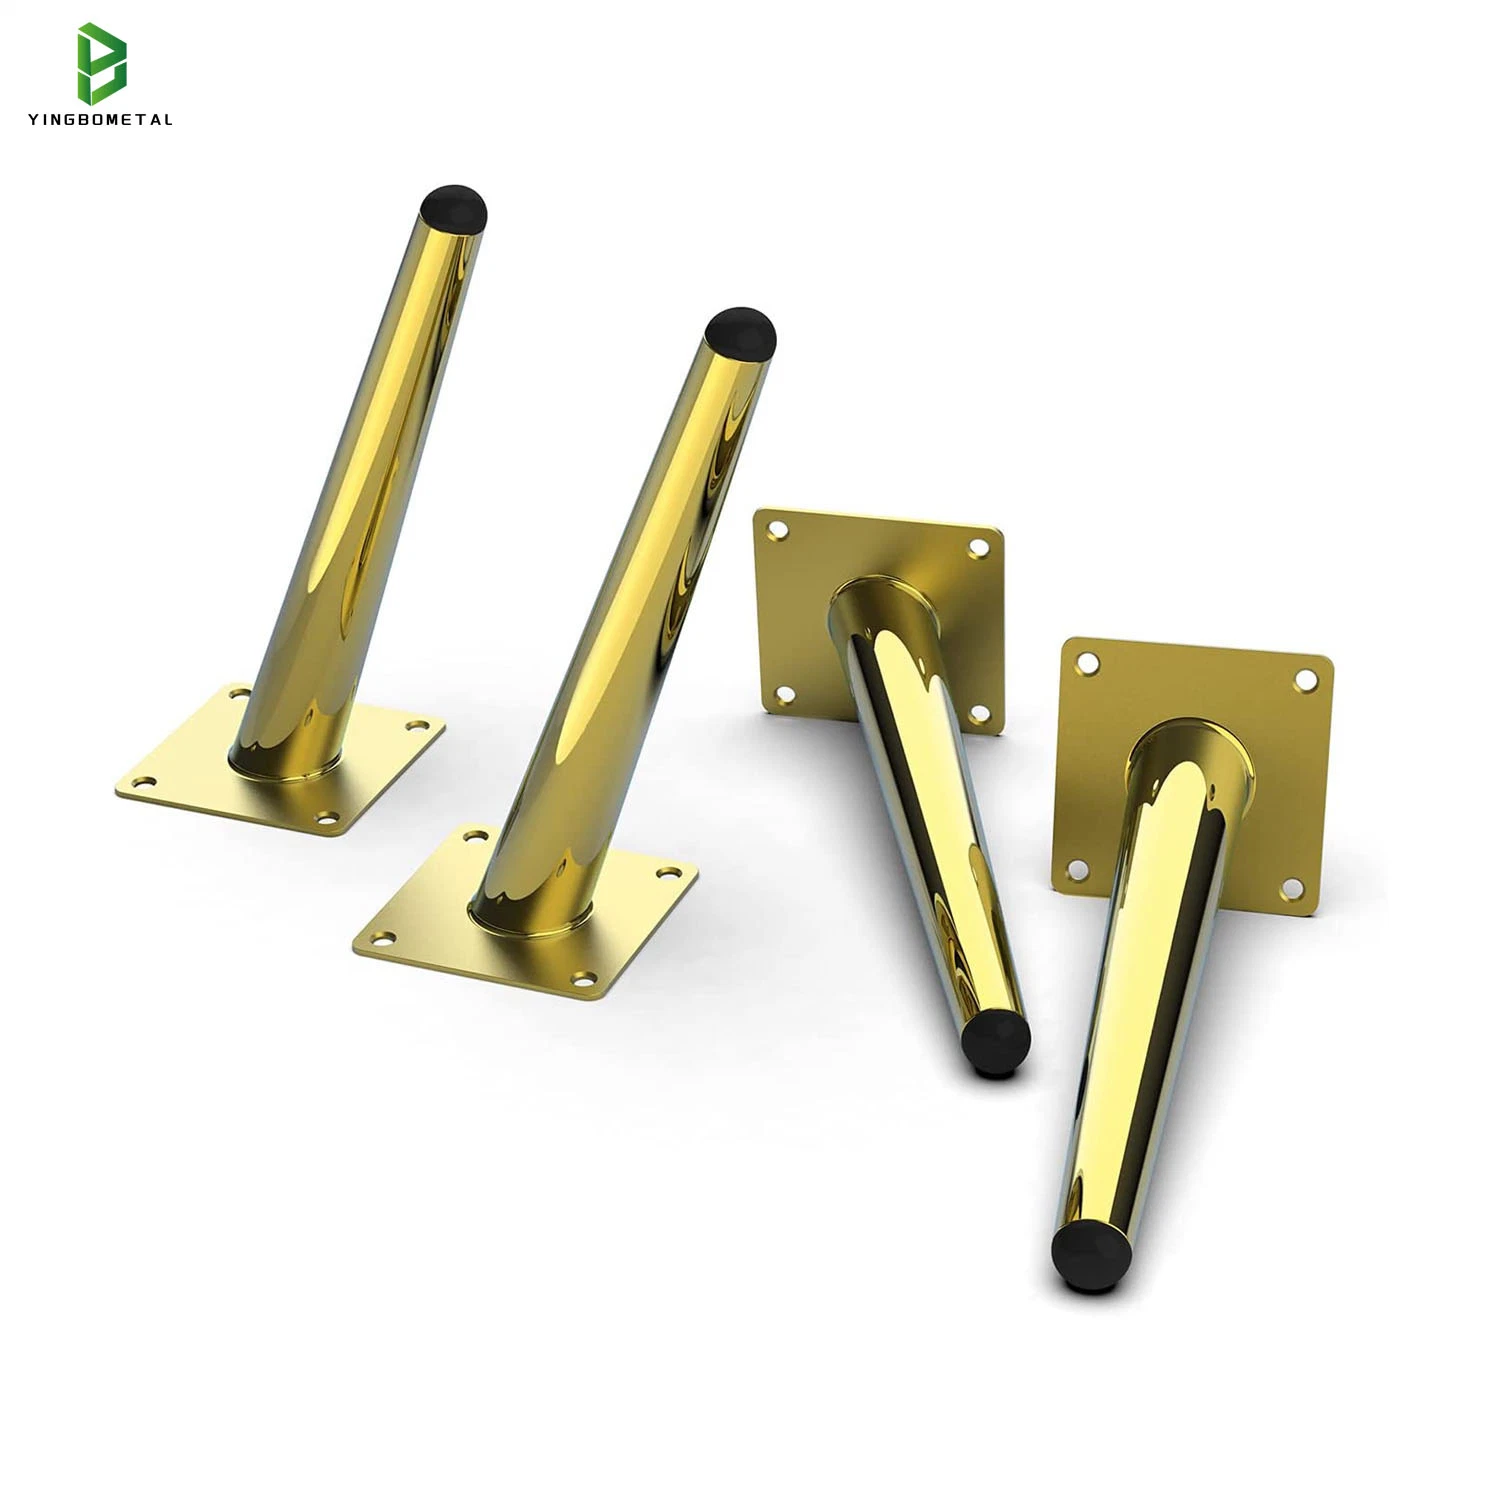 Precios baratos de hierro dorado personalizado muebles metálicos de acero inoxidable accesorios de las piezas de hardware